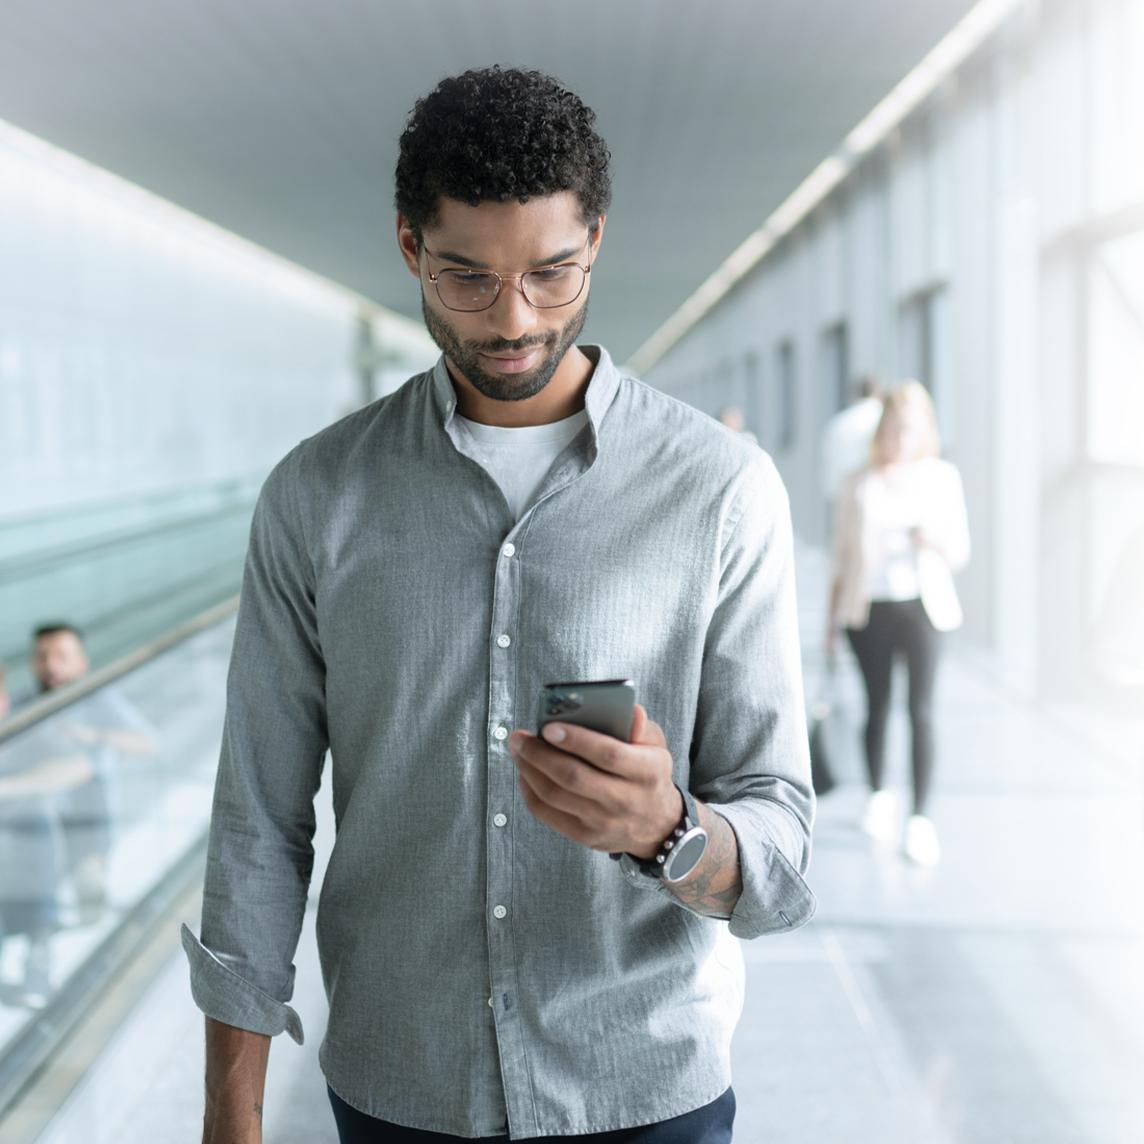 Nuori ZEISS SmartLife -linssejä käyttävä mies katsoo puhelintaan kävellessään.